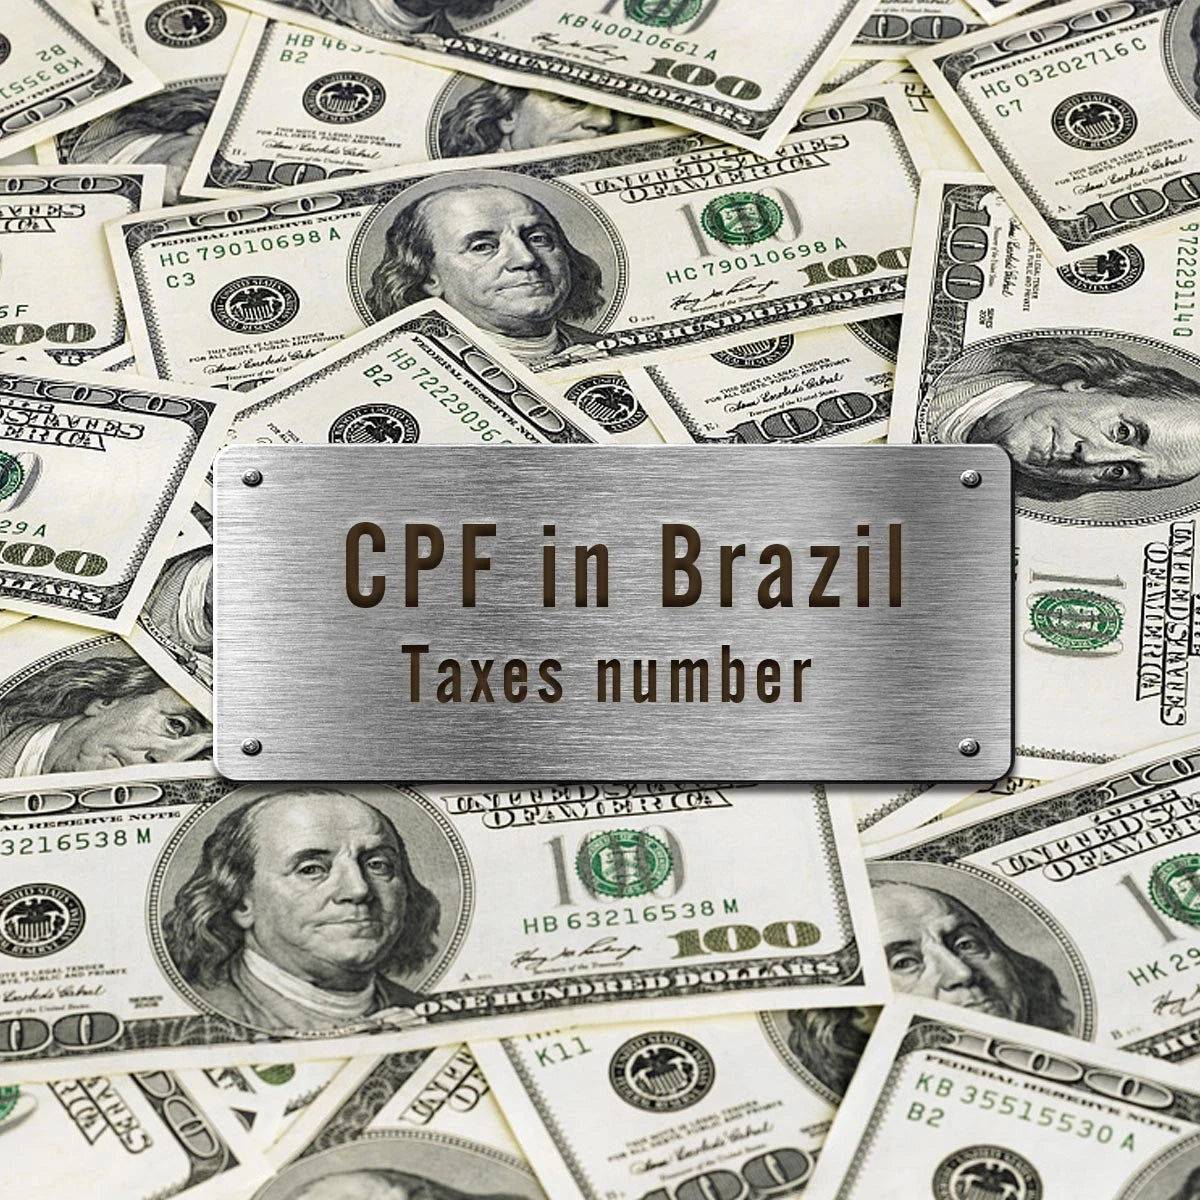 Όλες οι παραγγελίες (Βραζιλία) χρειάζονται τον ΑΦΜ (CPF)